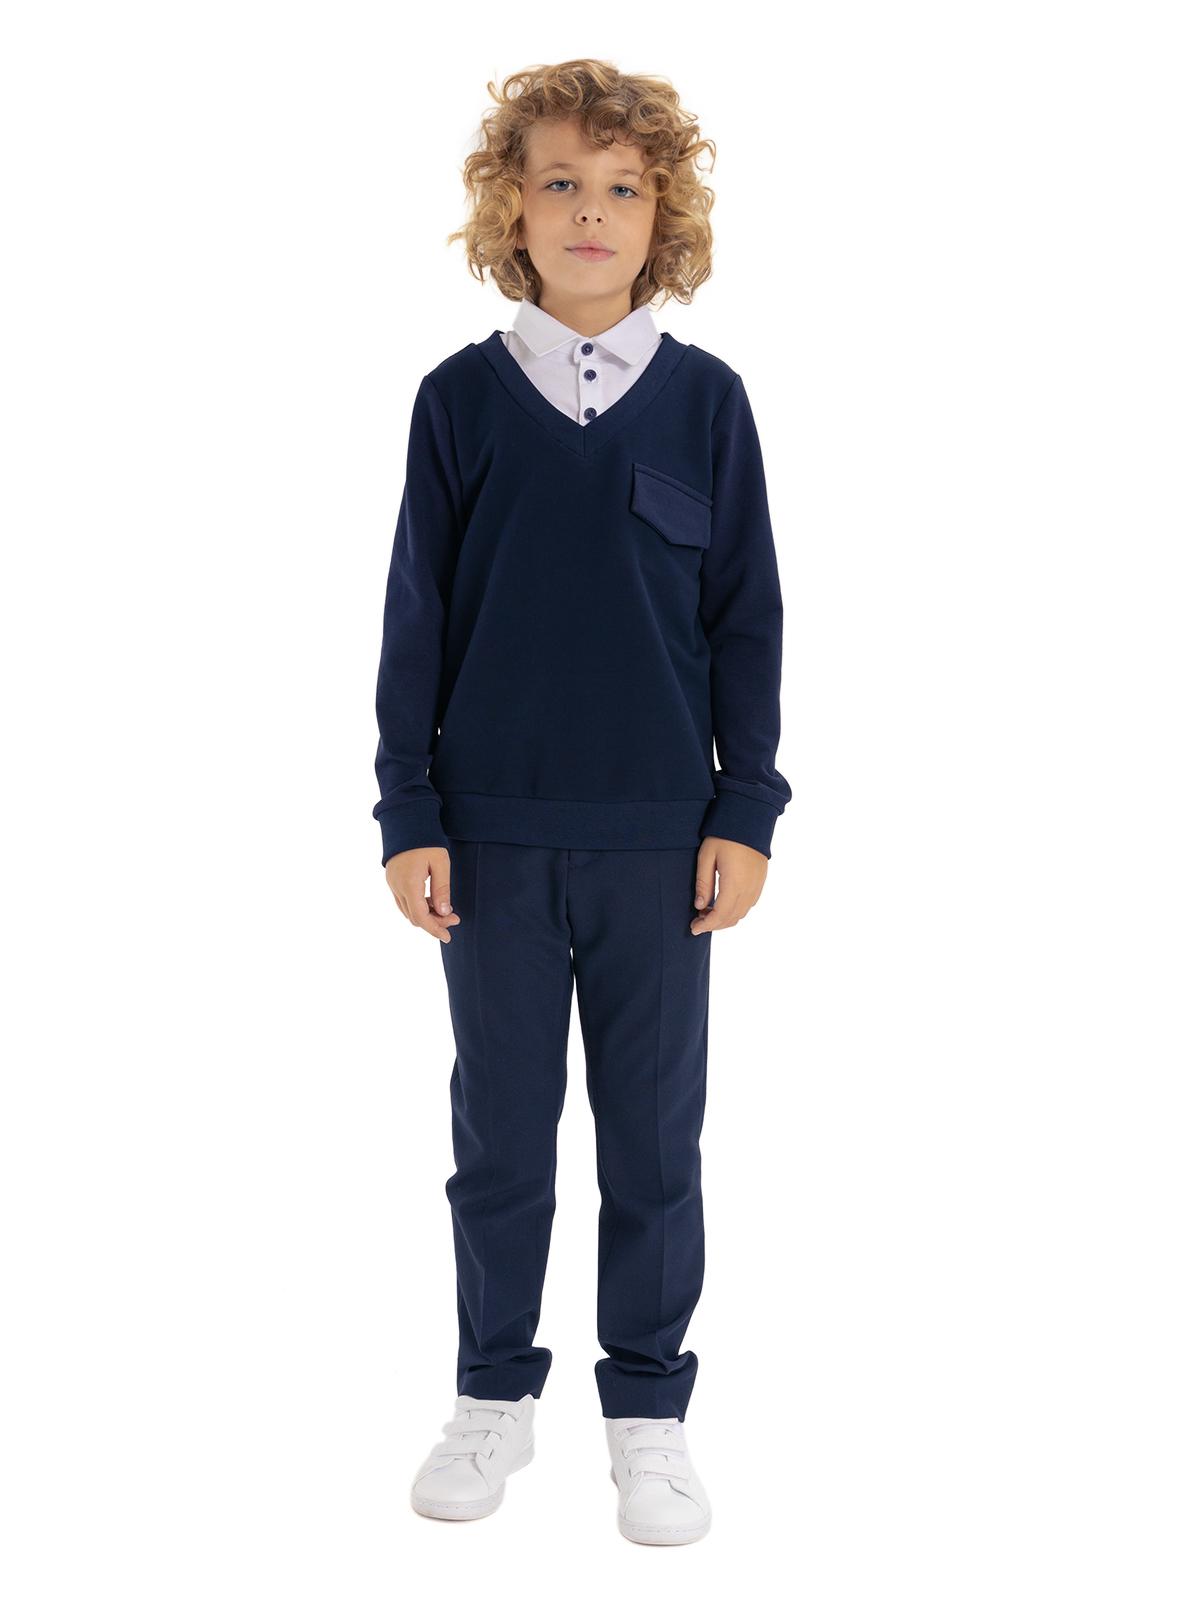 синий джемпер в школу, джемпер для мальчика с воротничком белым, трикотажный джемпер на мальчика